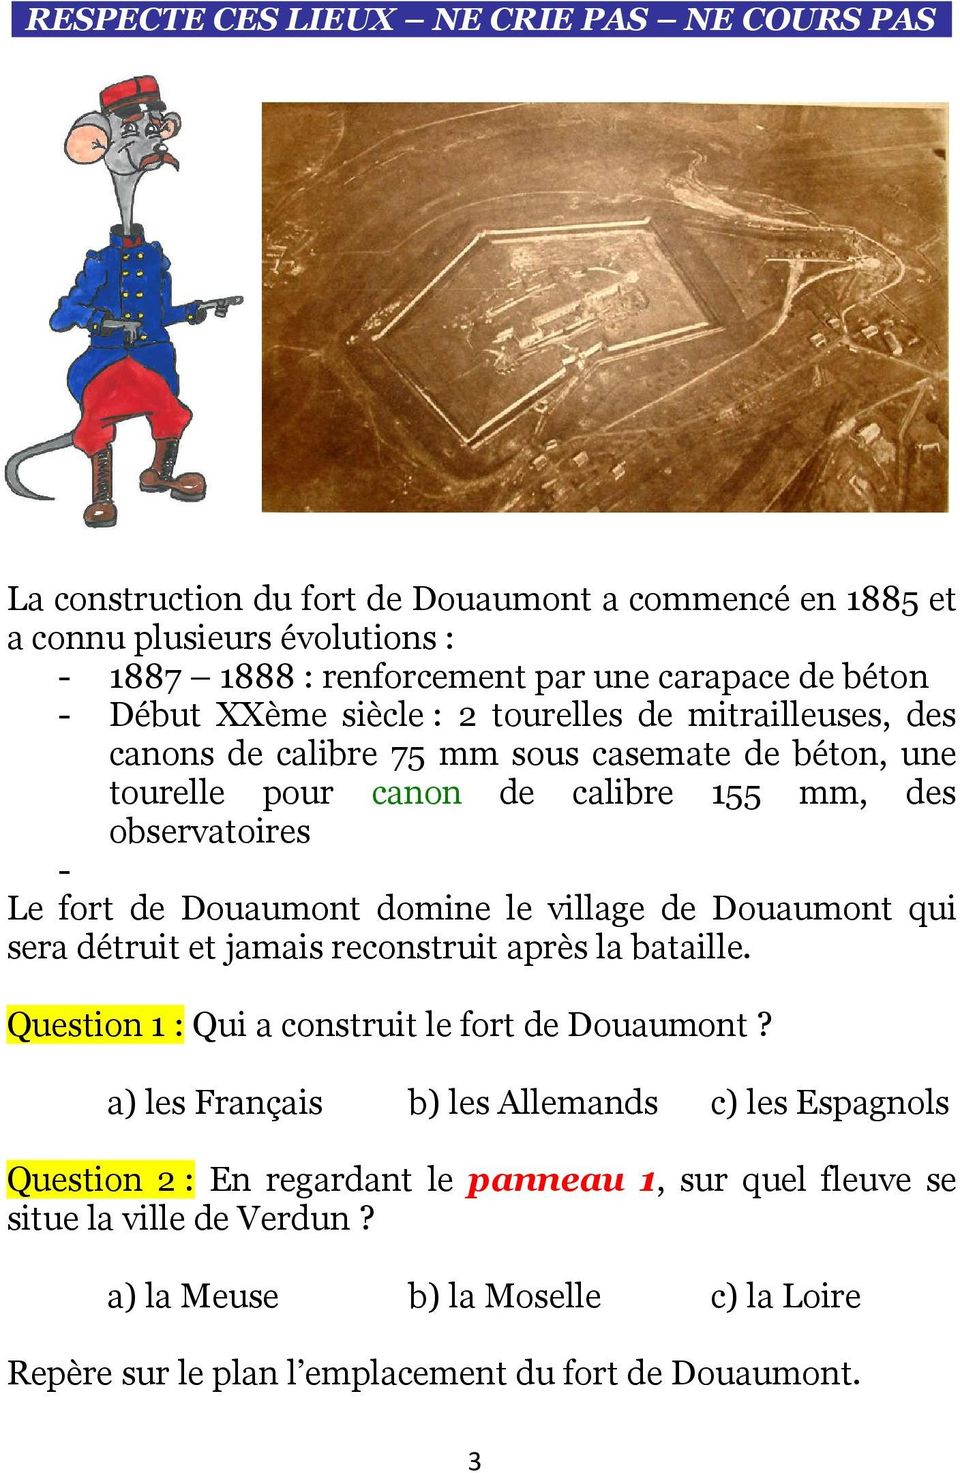 Douaumont domine le village de Douaumont qui sera détruit et jamais reconstruit après la bataille. Question 1 : Qui a construit le fort de Douaumont?